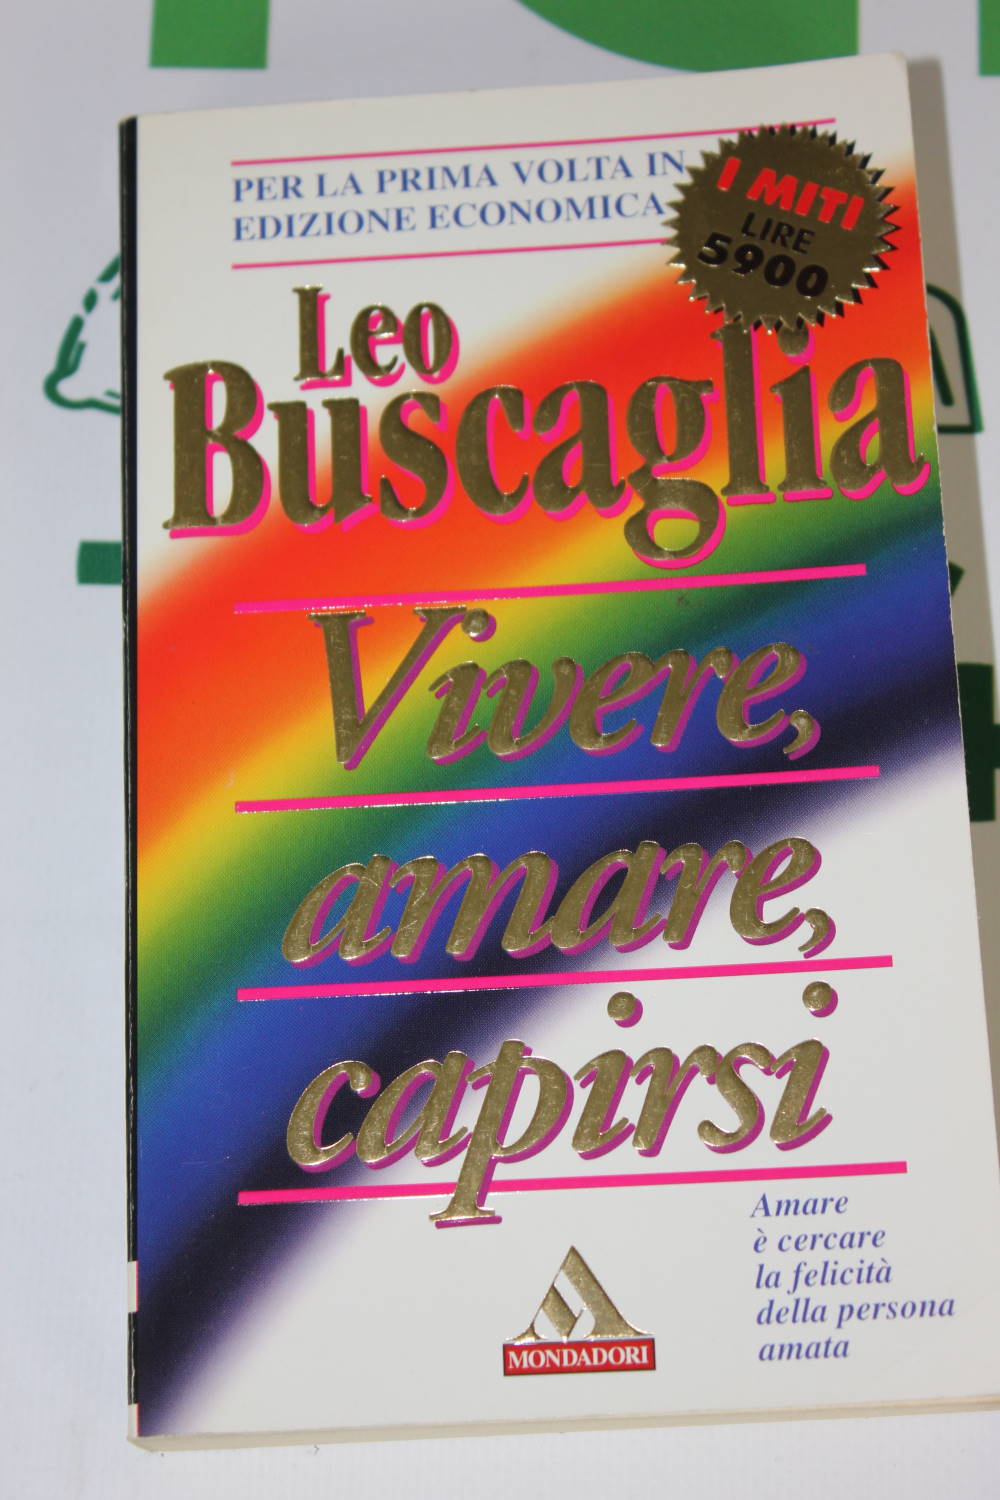 VIVERE AMARE CAPIRSI di Leo Buscaglia